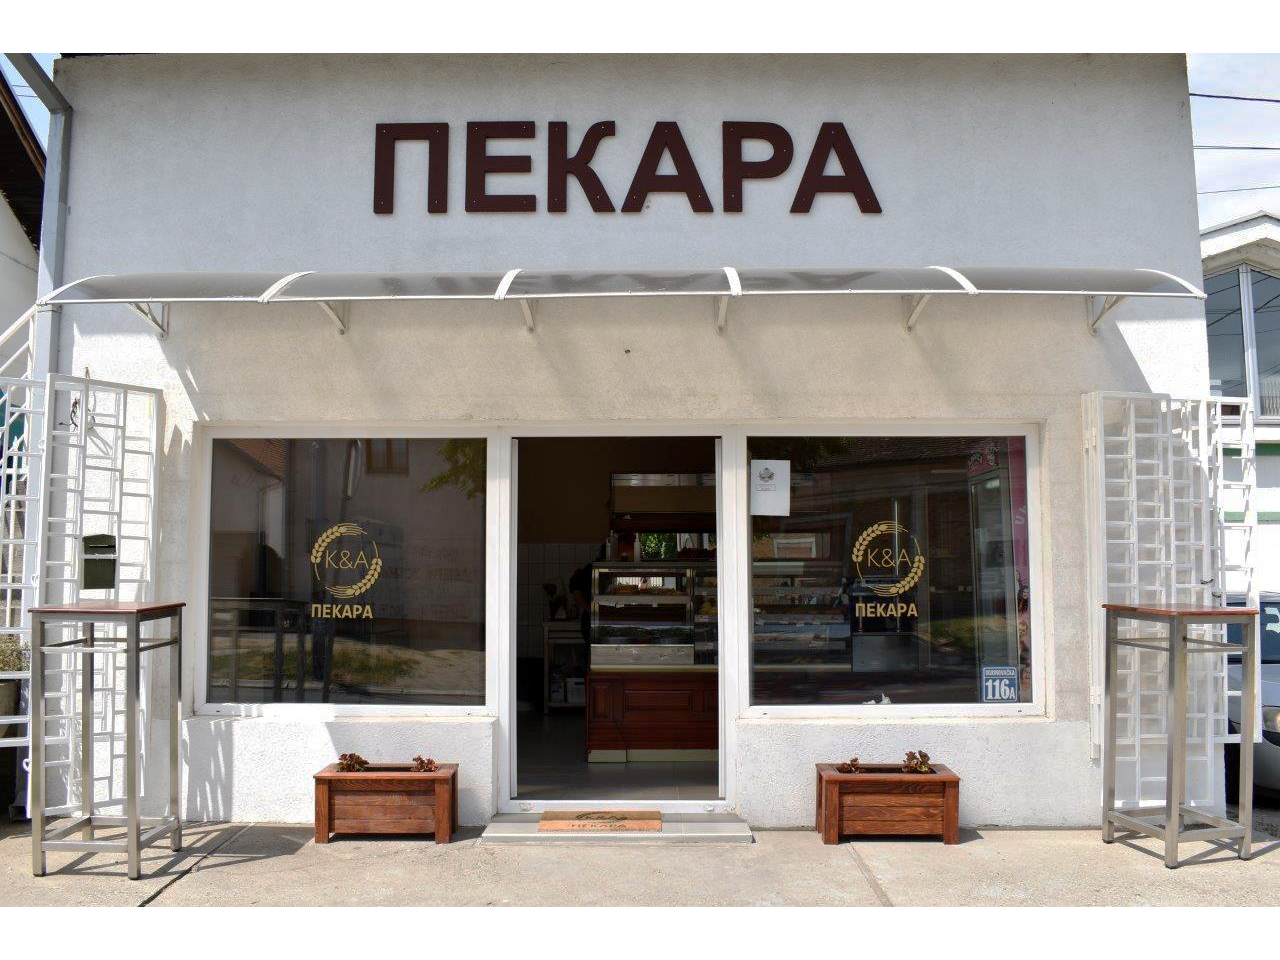 KETERING I PEKARA K&A Ketering Beograd